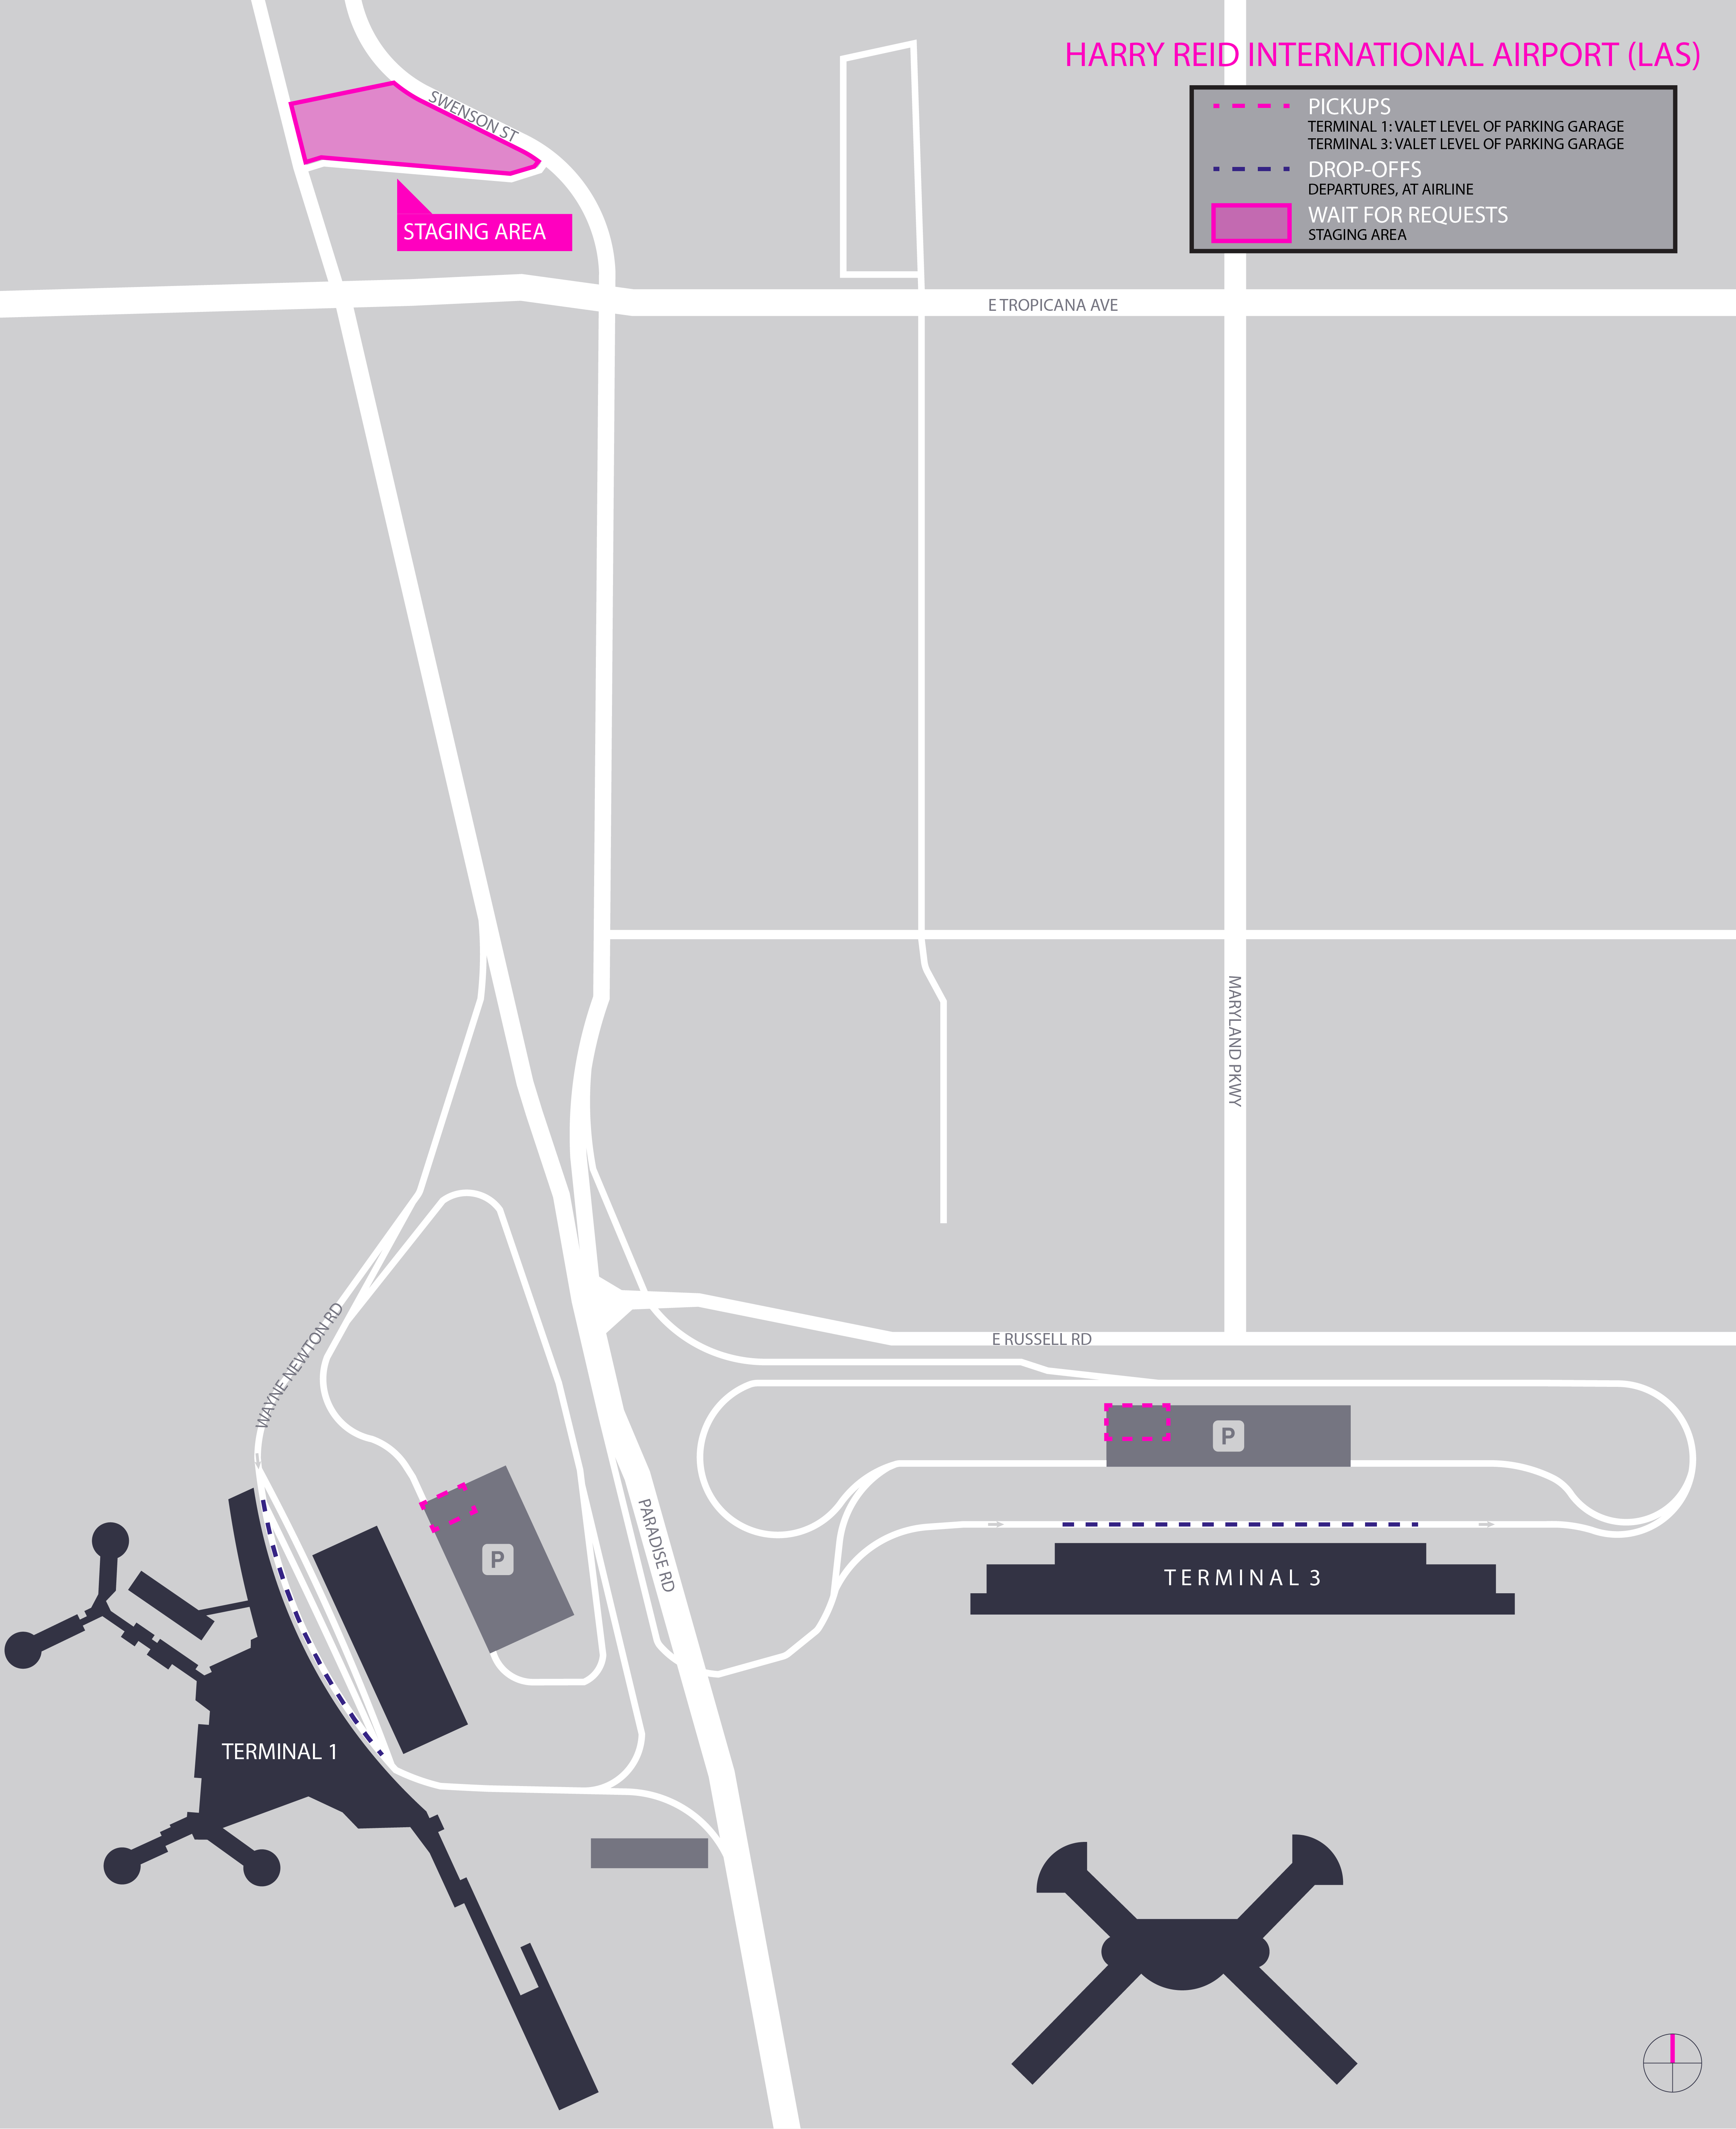 Esta imagen es un mapa del aeropuerto de LAS. Incluye el área de espera, y las zonas para recoger y dejar pasajeros.